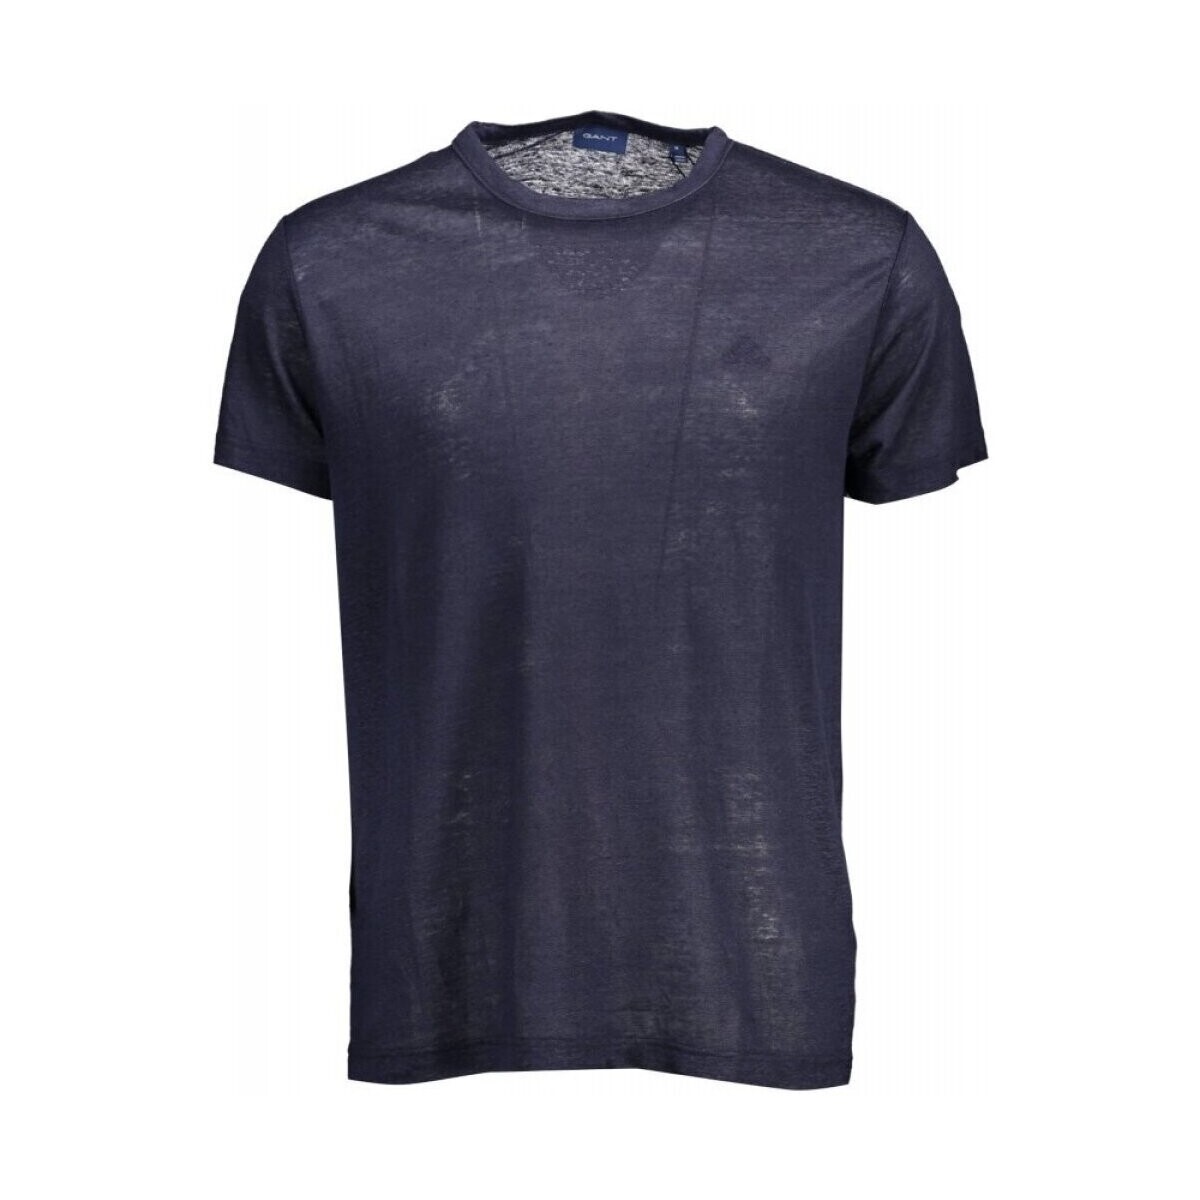 Textiel Heren T-shirts korte mouwen Gant 21012023029 Blauw